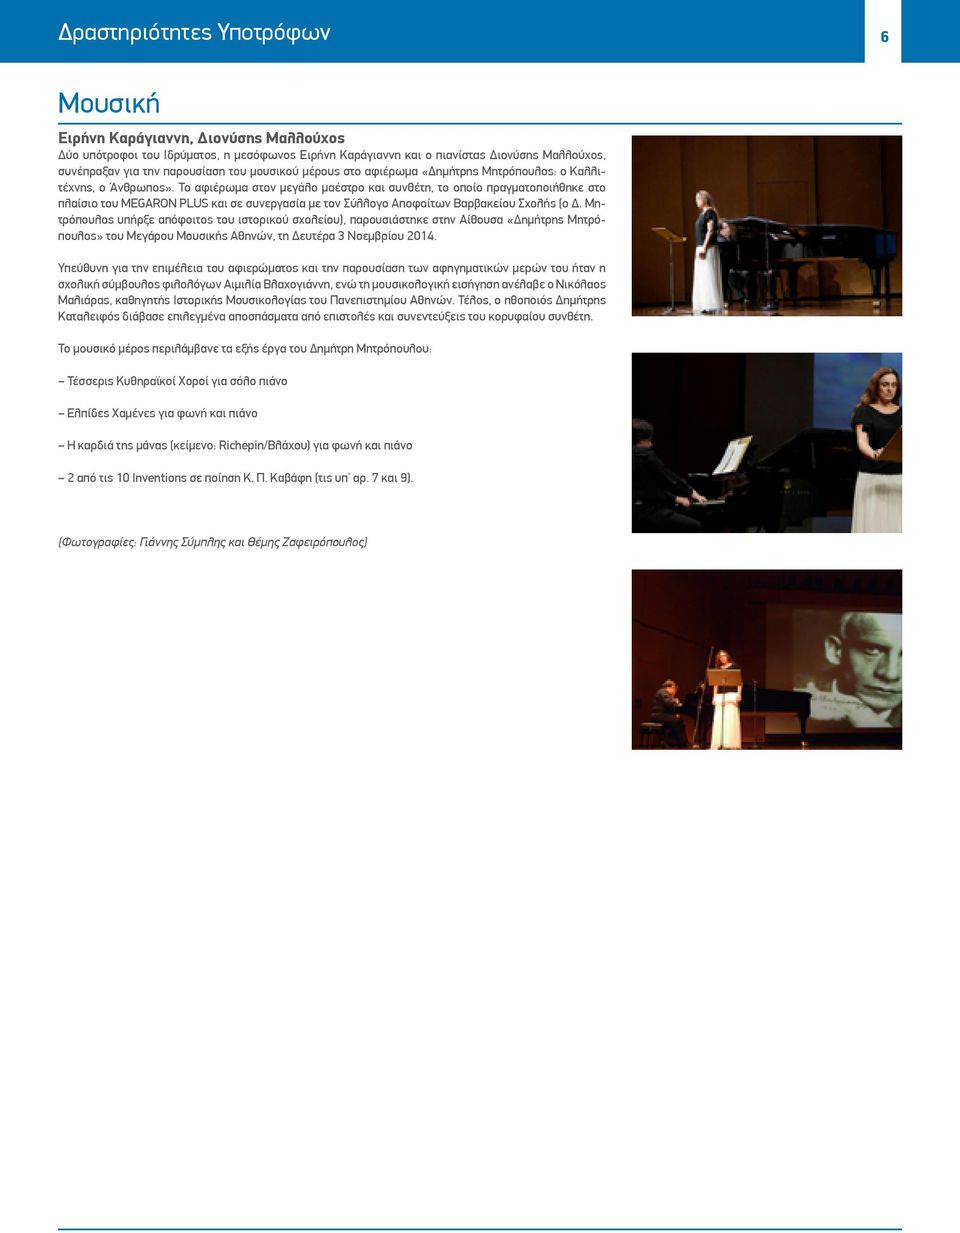 Το αφιέρωμα στον μεγάλο μαέστρο και συνθέτη, το οποίο πραγματοποιήθηκε στο πλαίσιο του MEGARON PLUS και σε συνεργασία με τον Σύλλογο Αποφοίτων Βαρβακείου Σχολής (ο Δ.